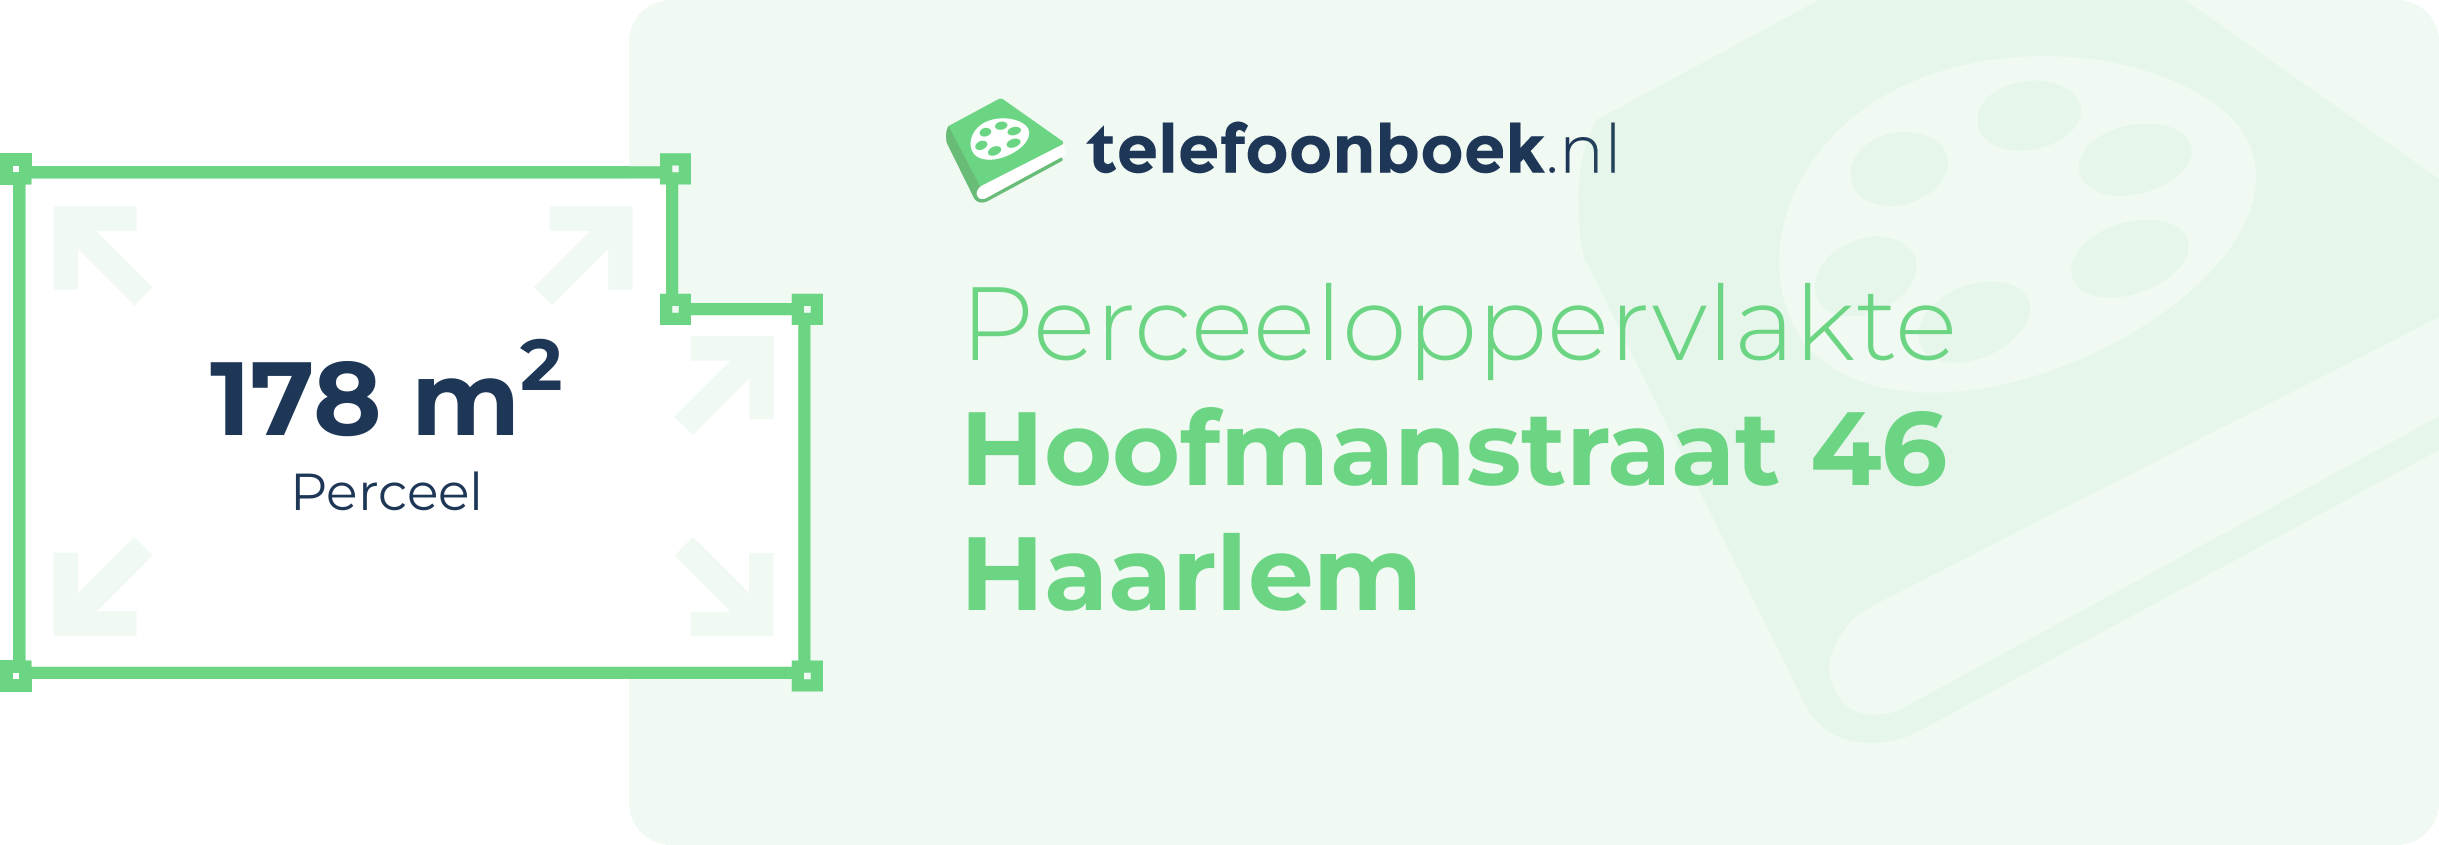 Perceeloppervlakte Hoofmanstraat 46 Haarlem